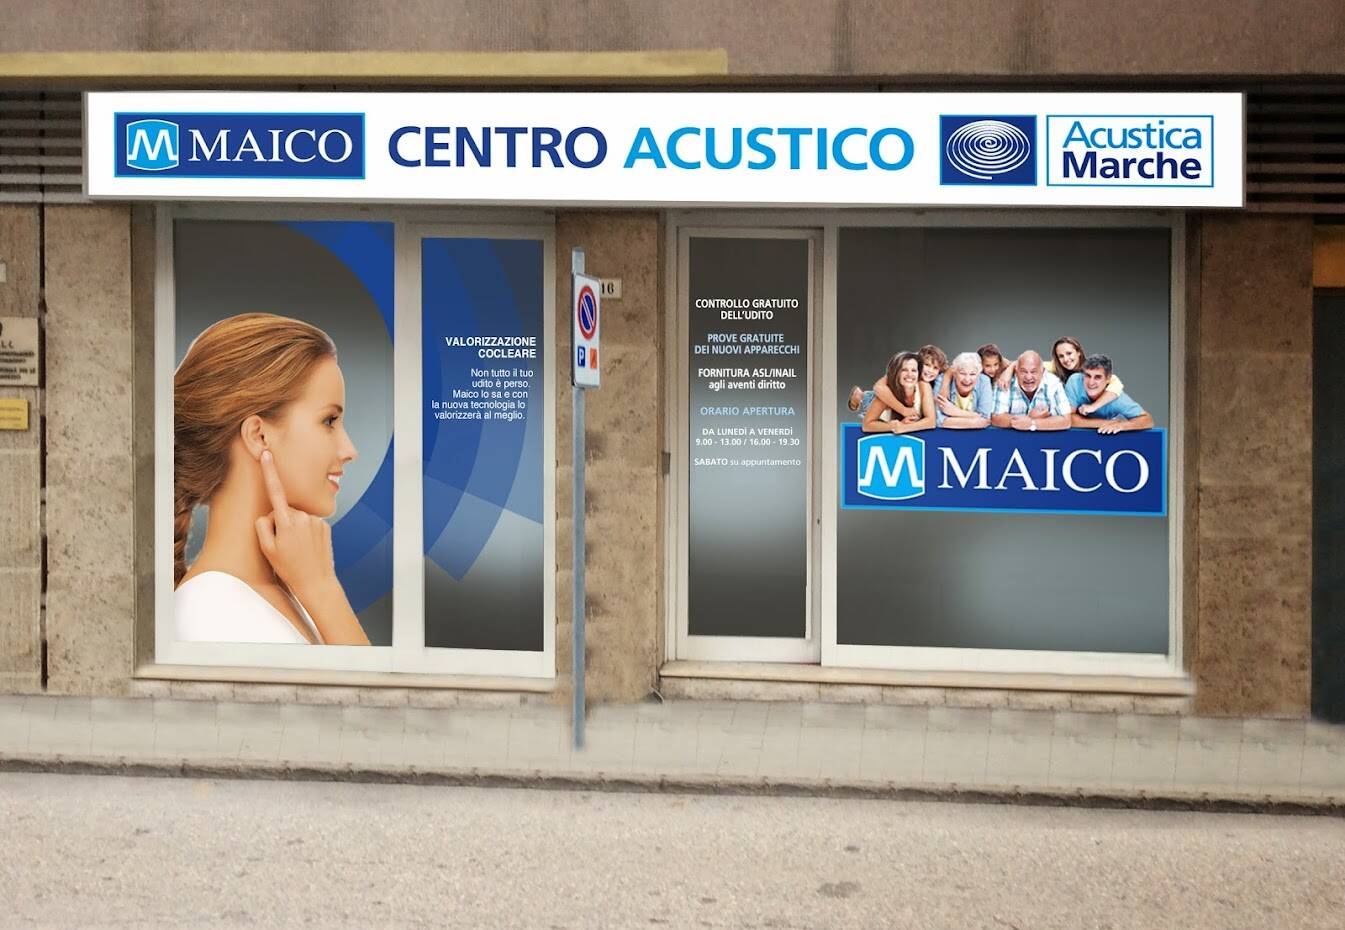 Acustica Marche, Ancona